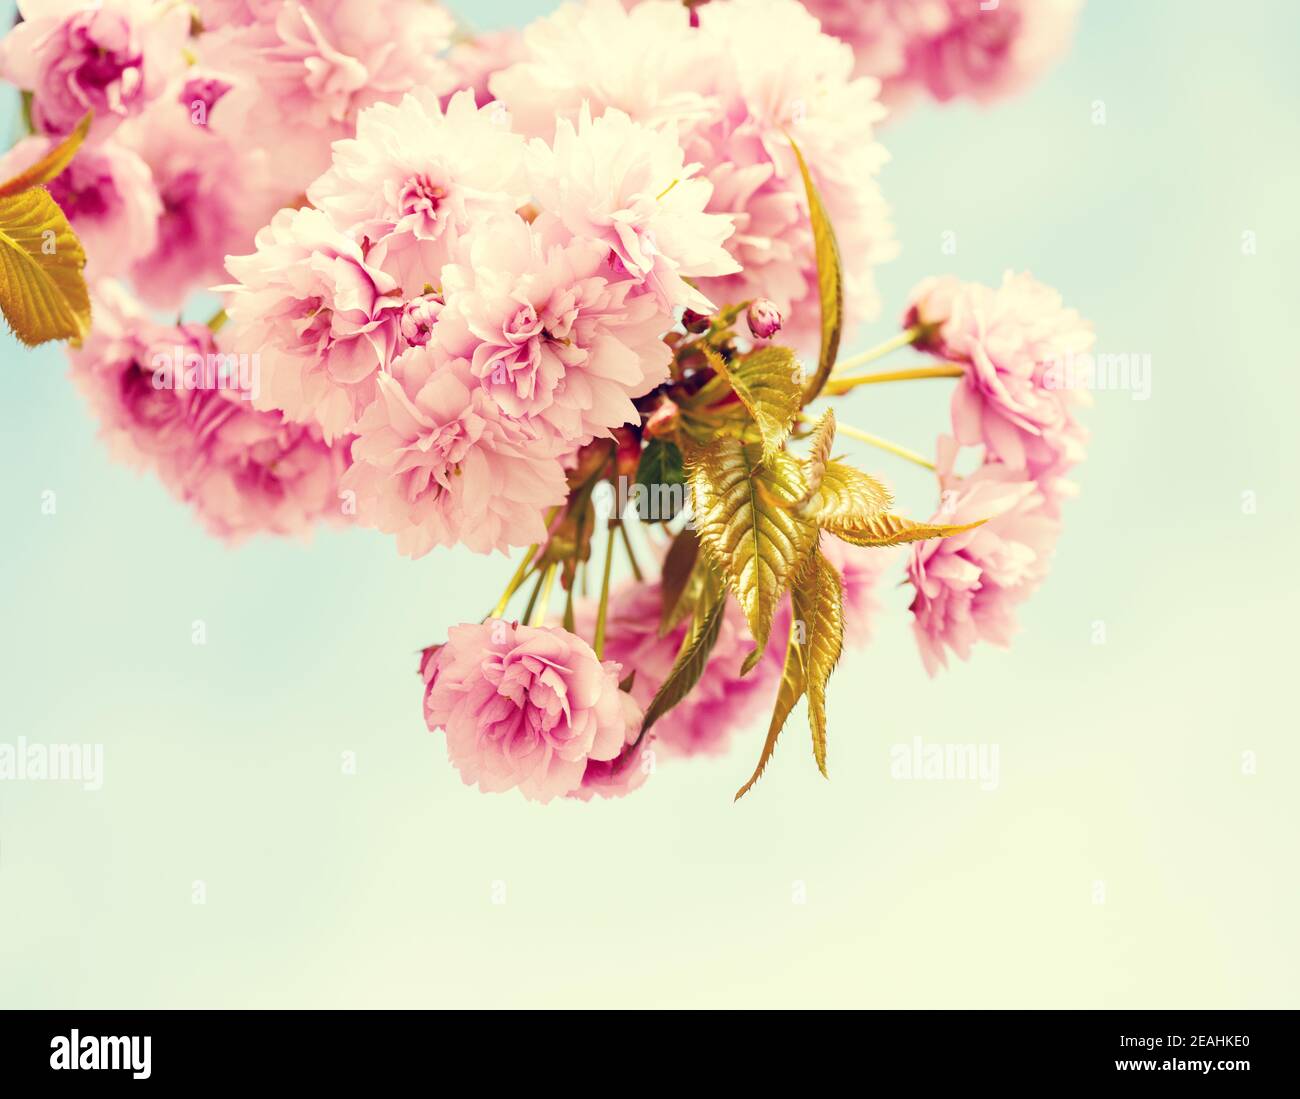 Zweige mit hellrosa Blüten von Kirschblüten (Sakura). Foto im Retro-Stil. Getöntes Bild. Selektiver Fokus. Stockfoto